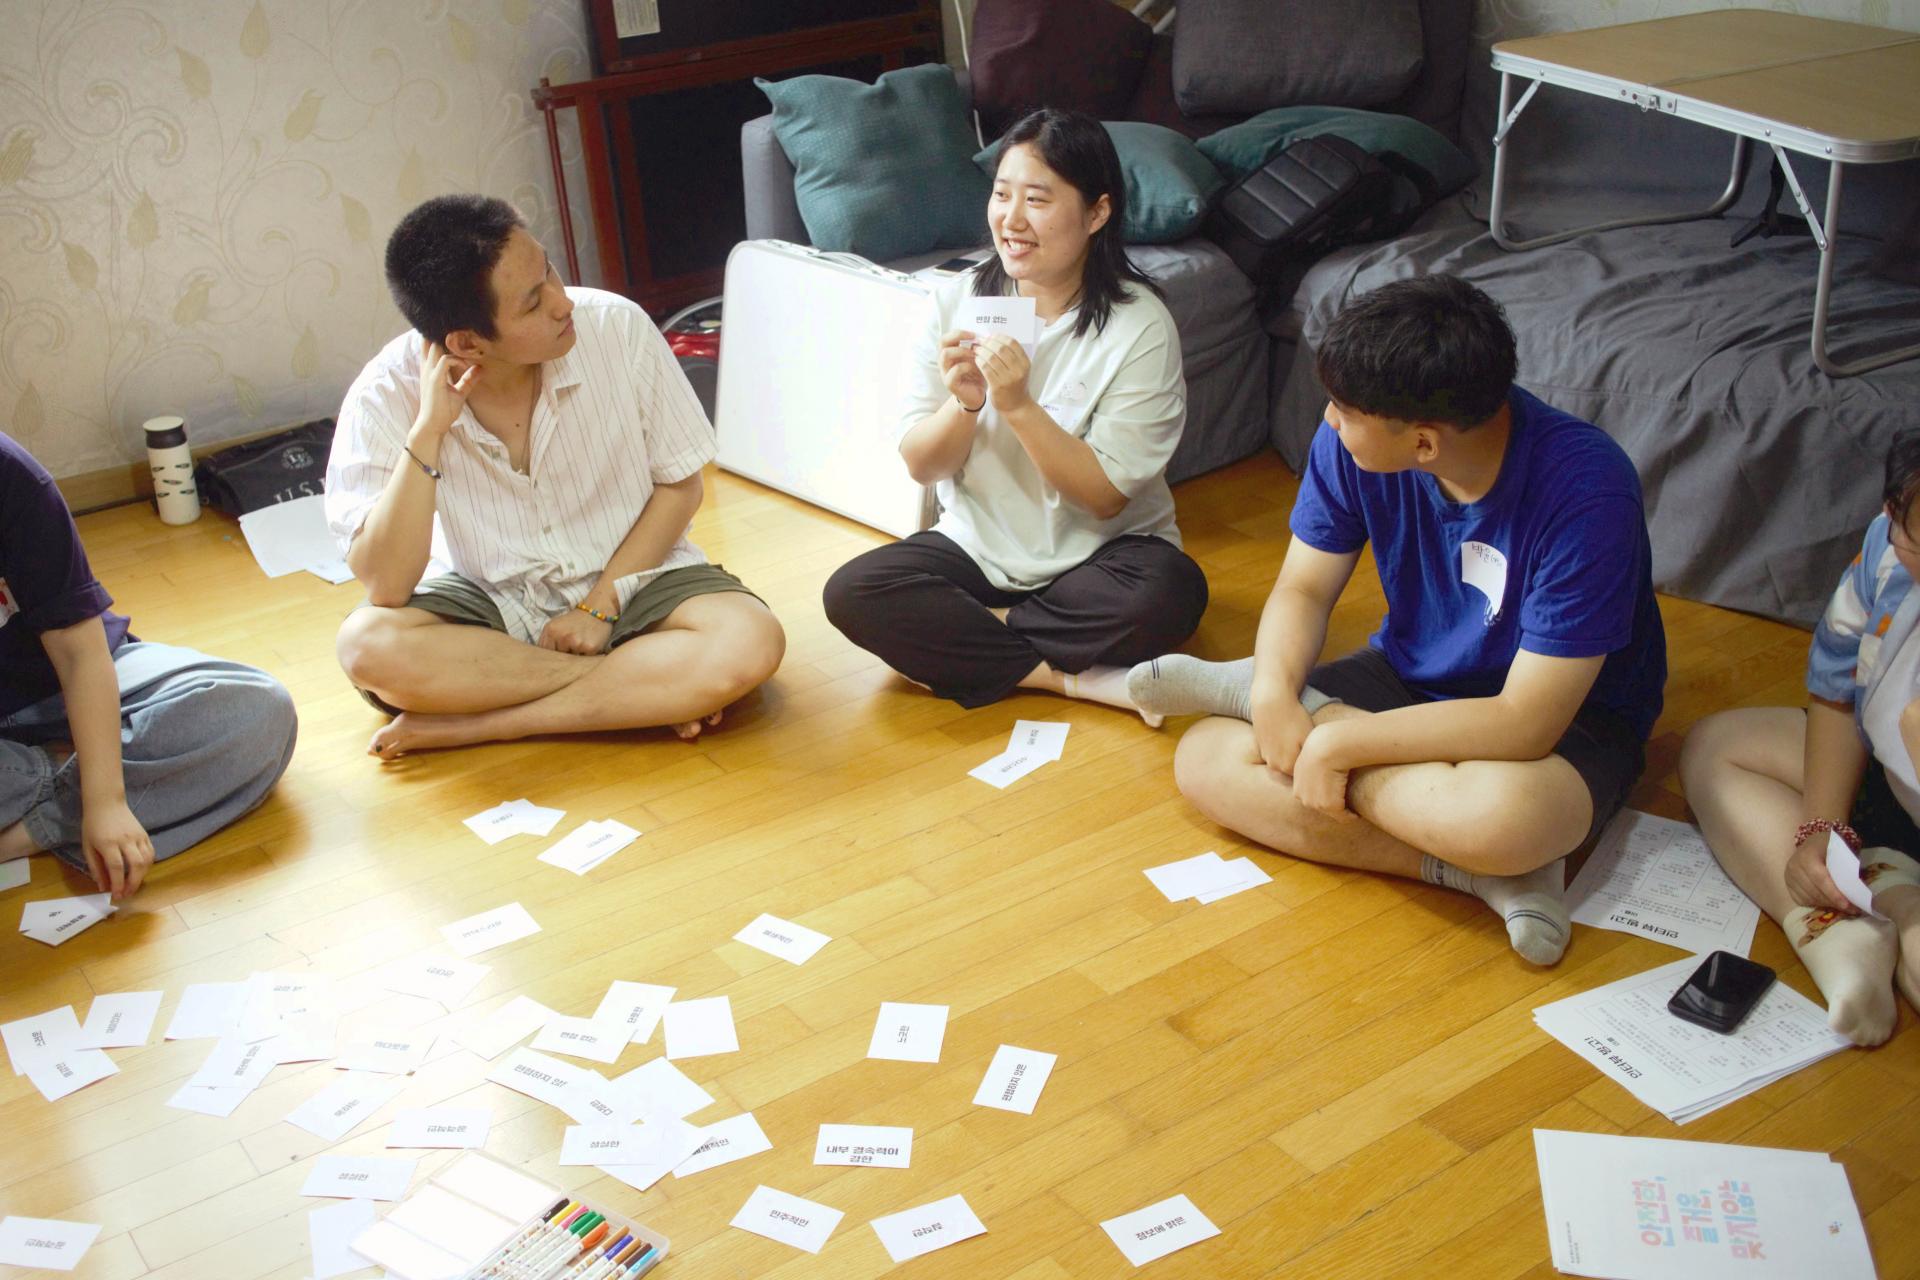 참가자들이 거실 바닥에 둘러 앉아있다. 중앙에는 글자들이 적힌 작은 카드들이 널려있다.